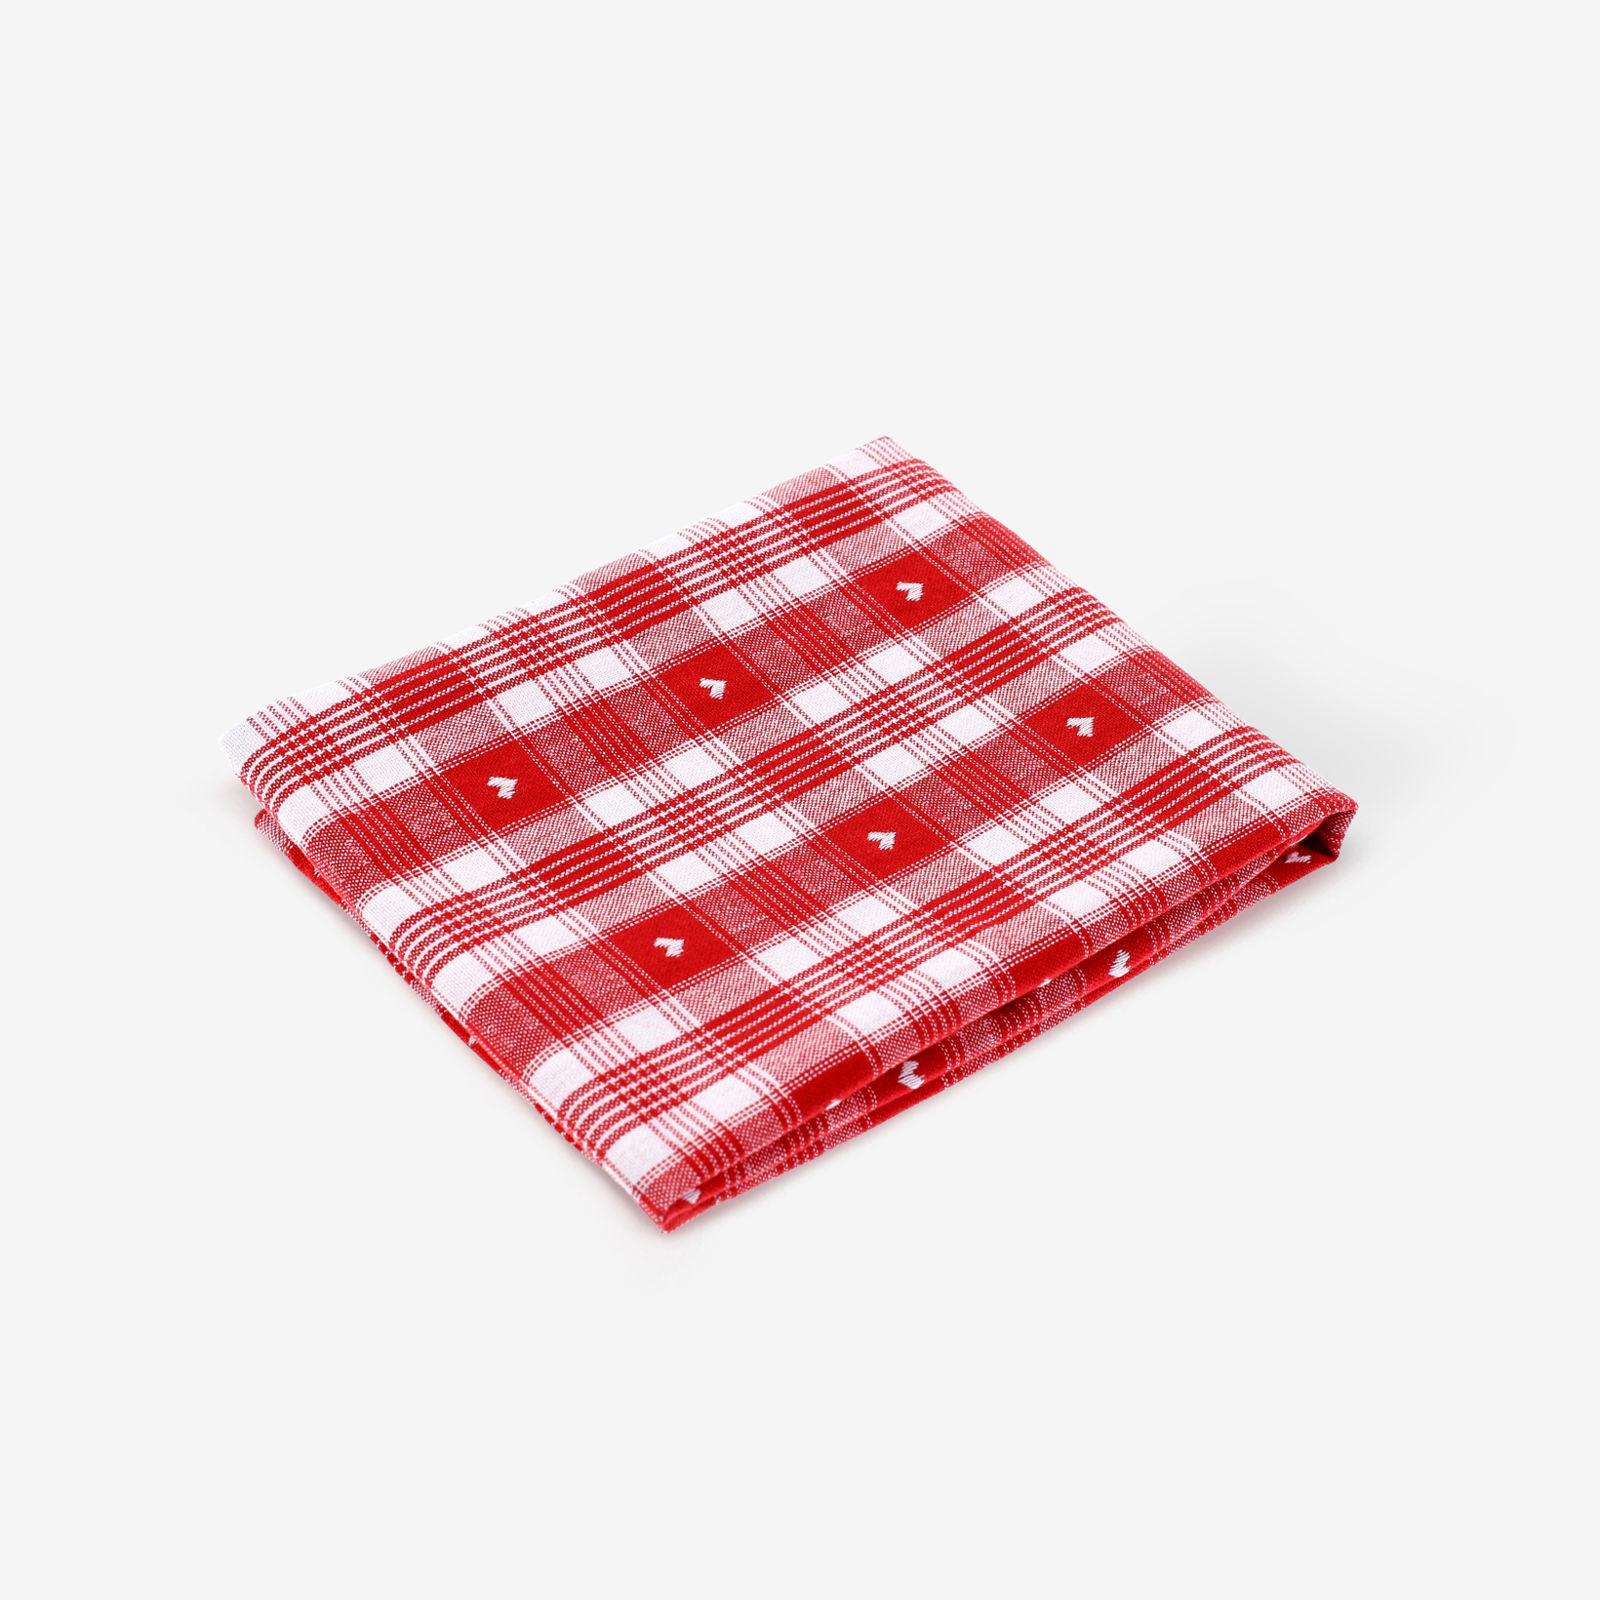 Ścierka kuchenna bawełniana - serduszka na czerwono-białej kratce